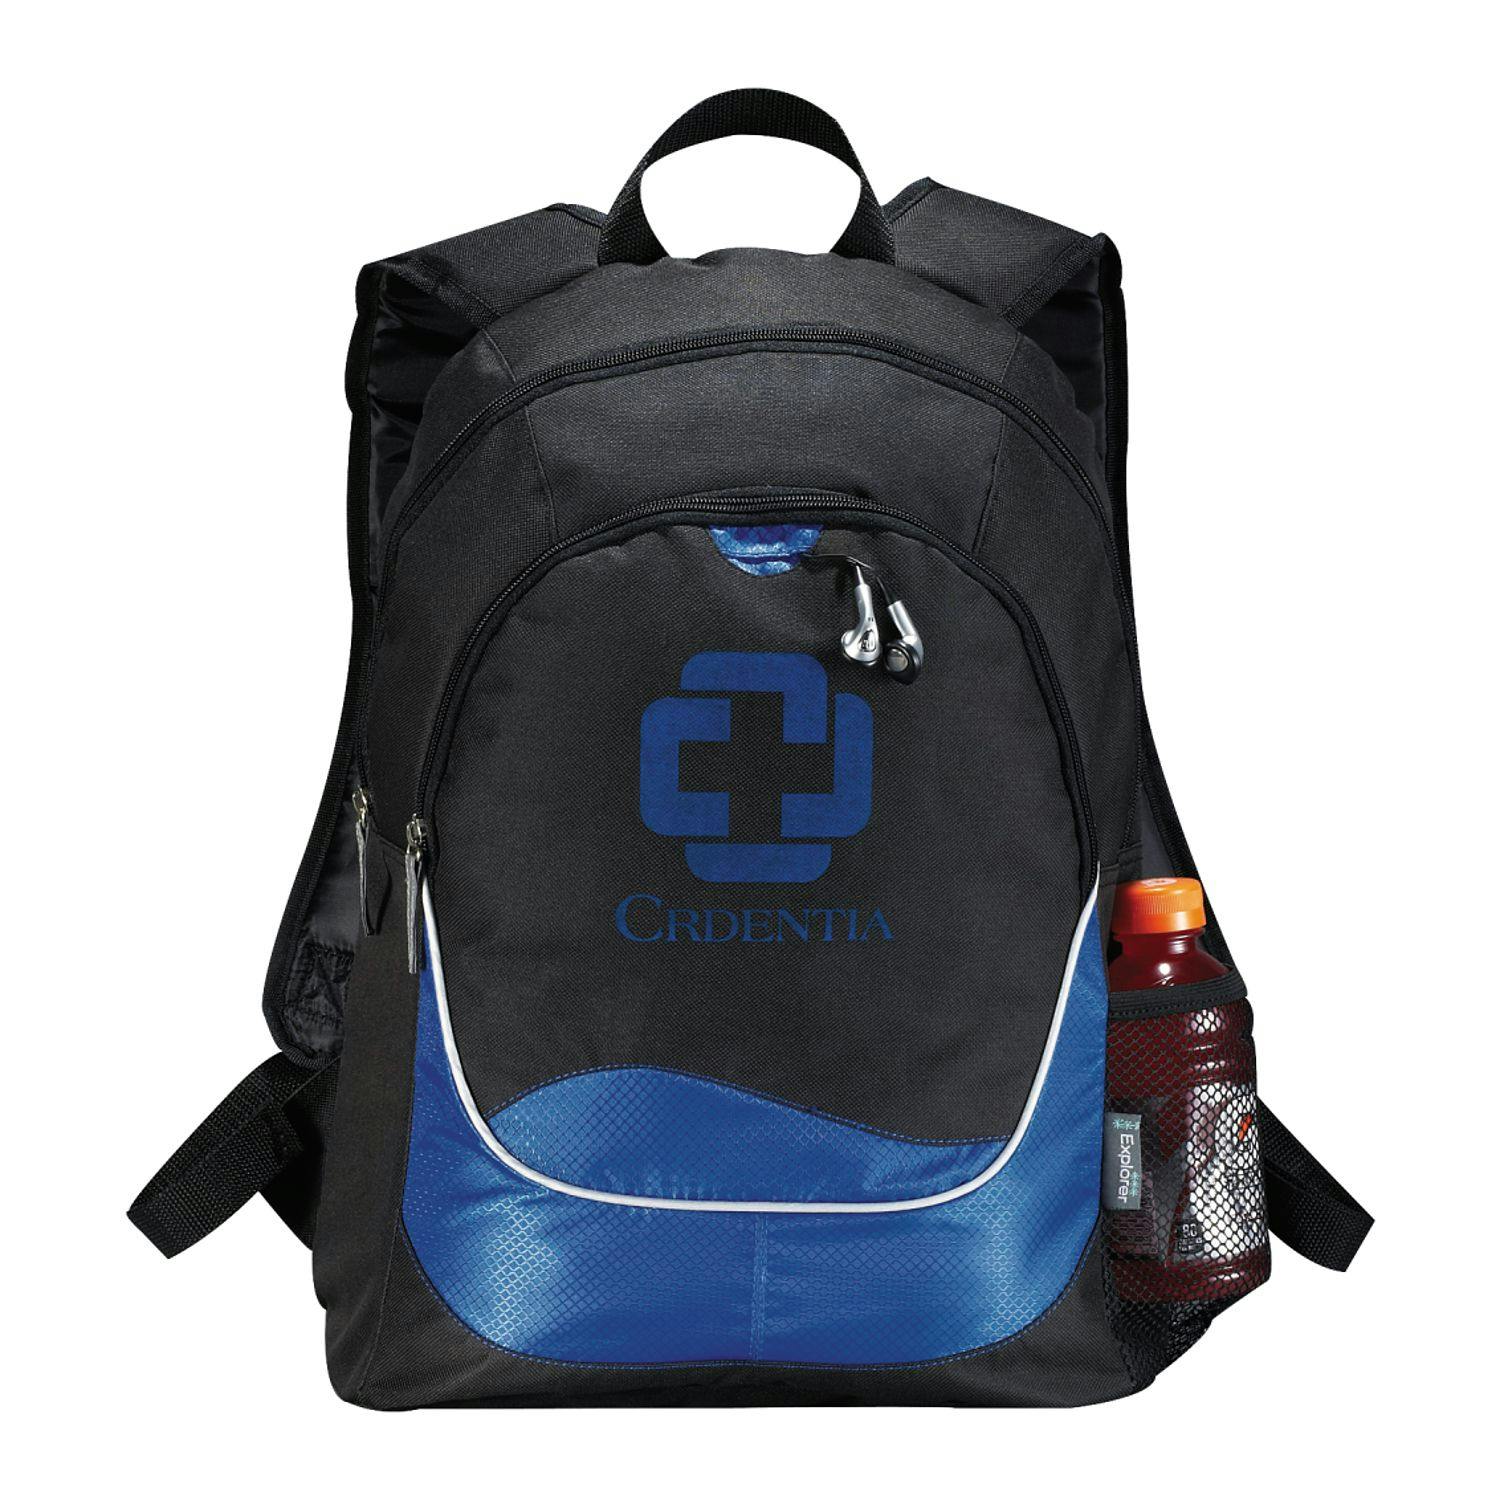 Explorer Backpack - additional Image 1